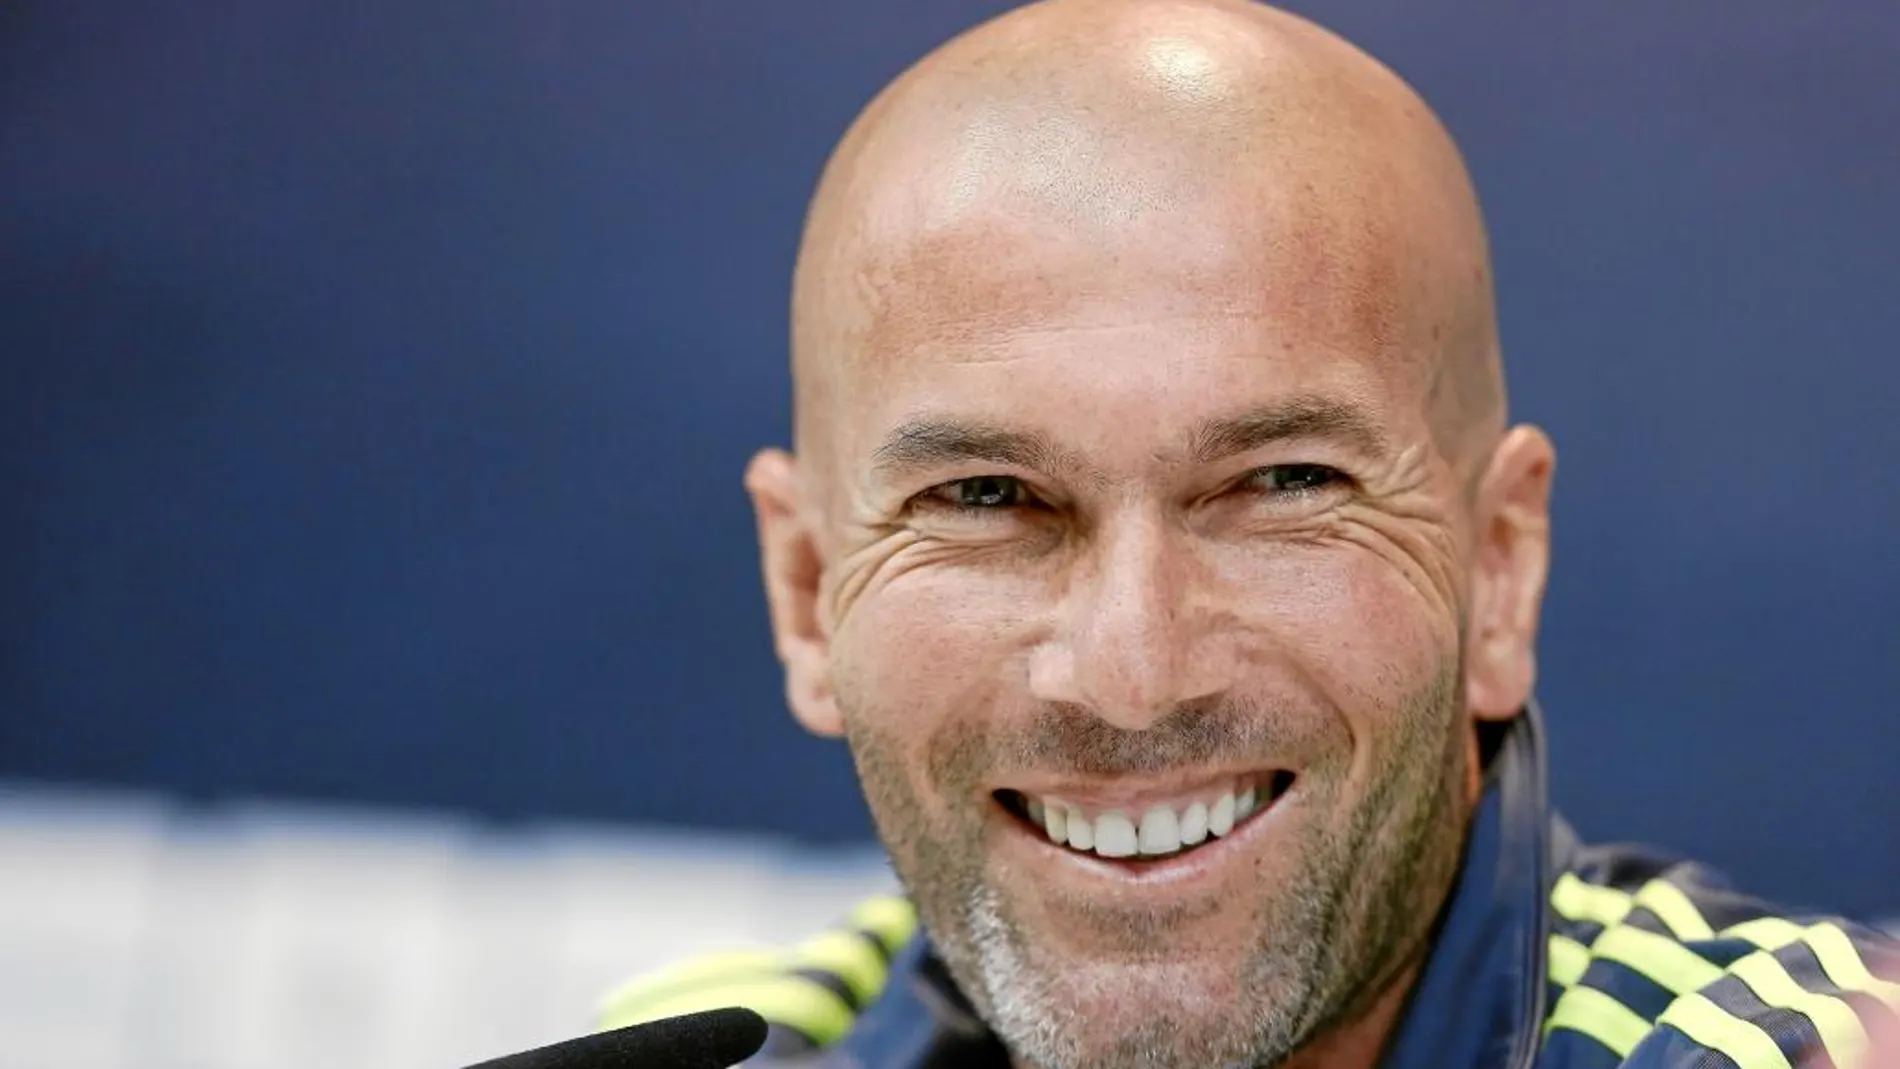 La Liga de Zidane